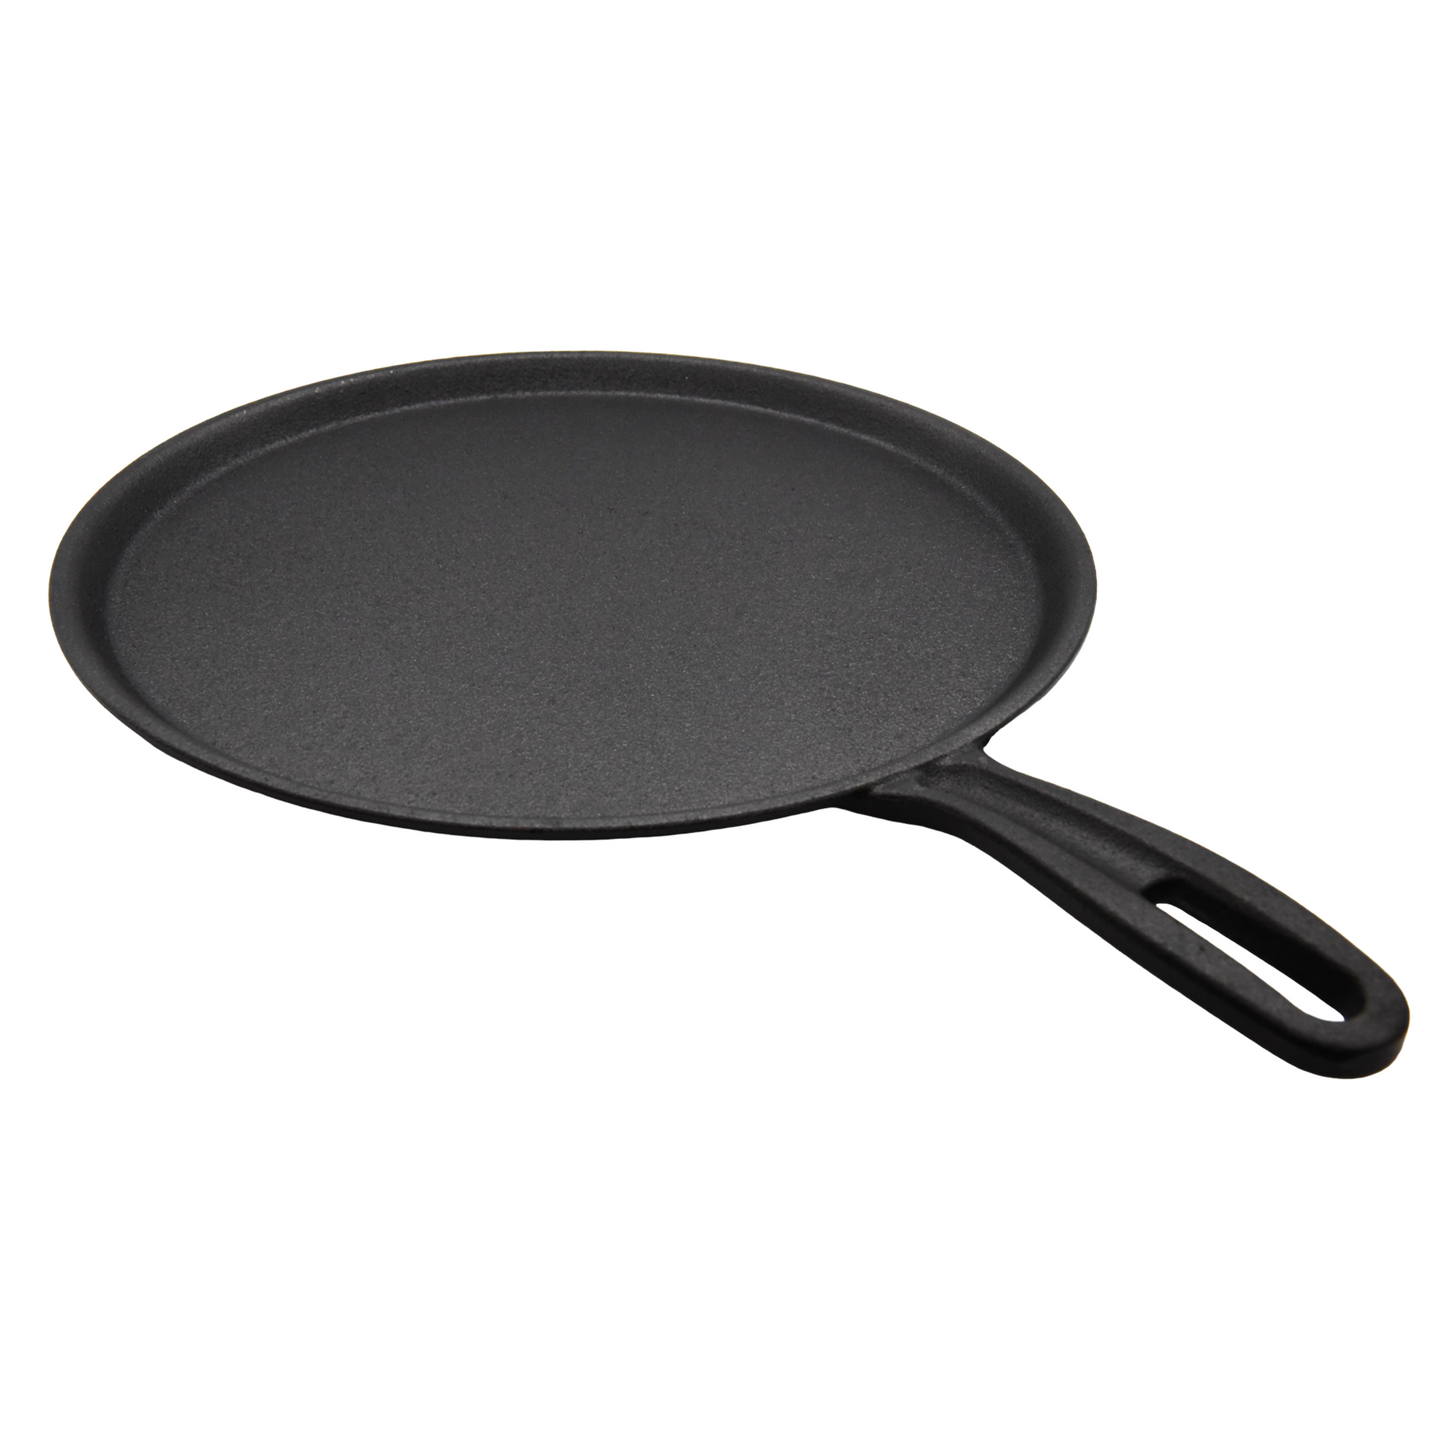 Pre-Seasoned Cast Iron Pancake Pan